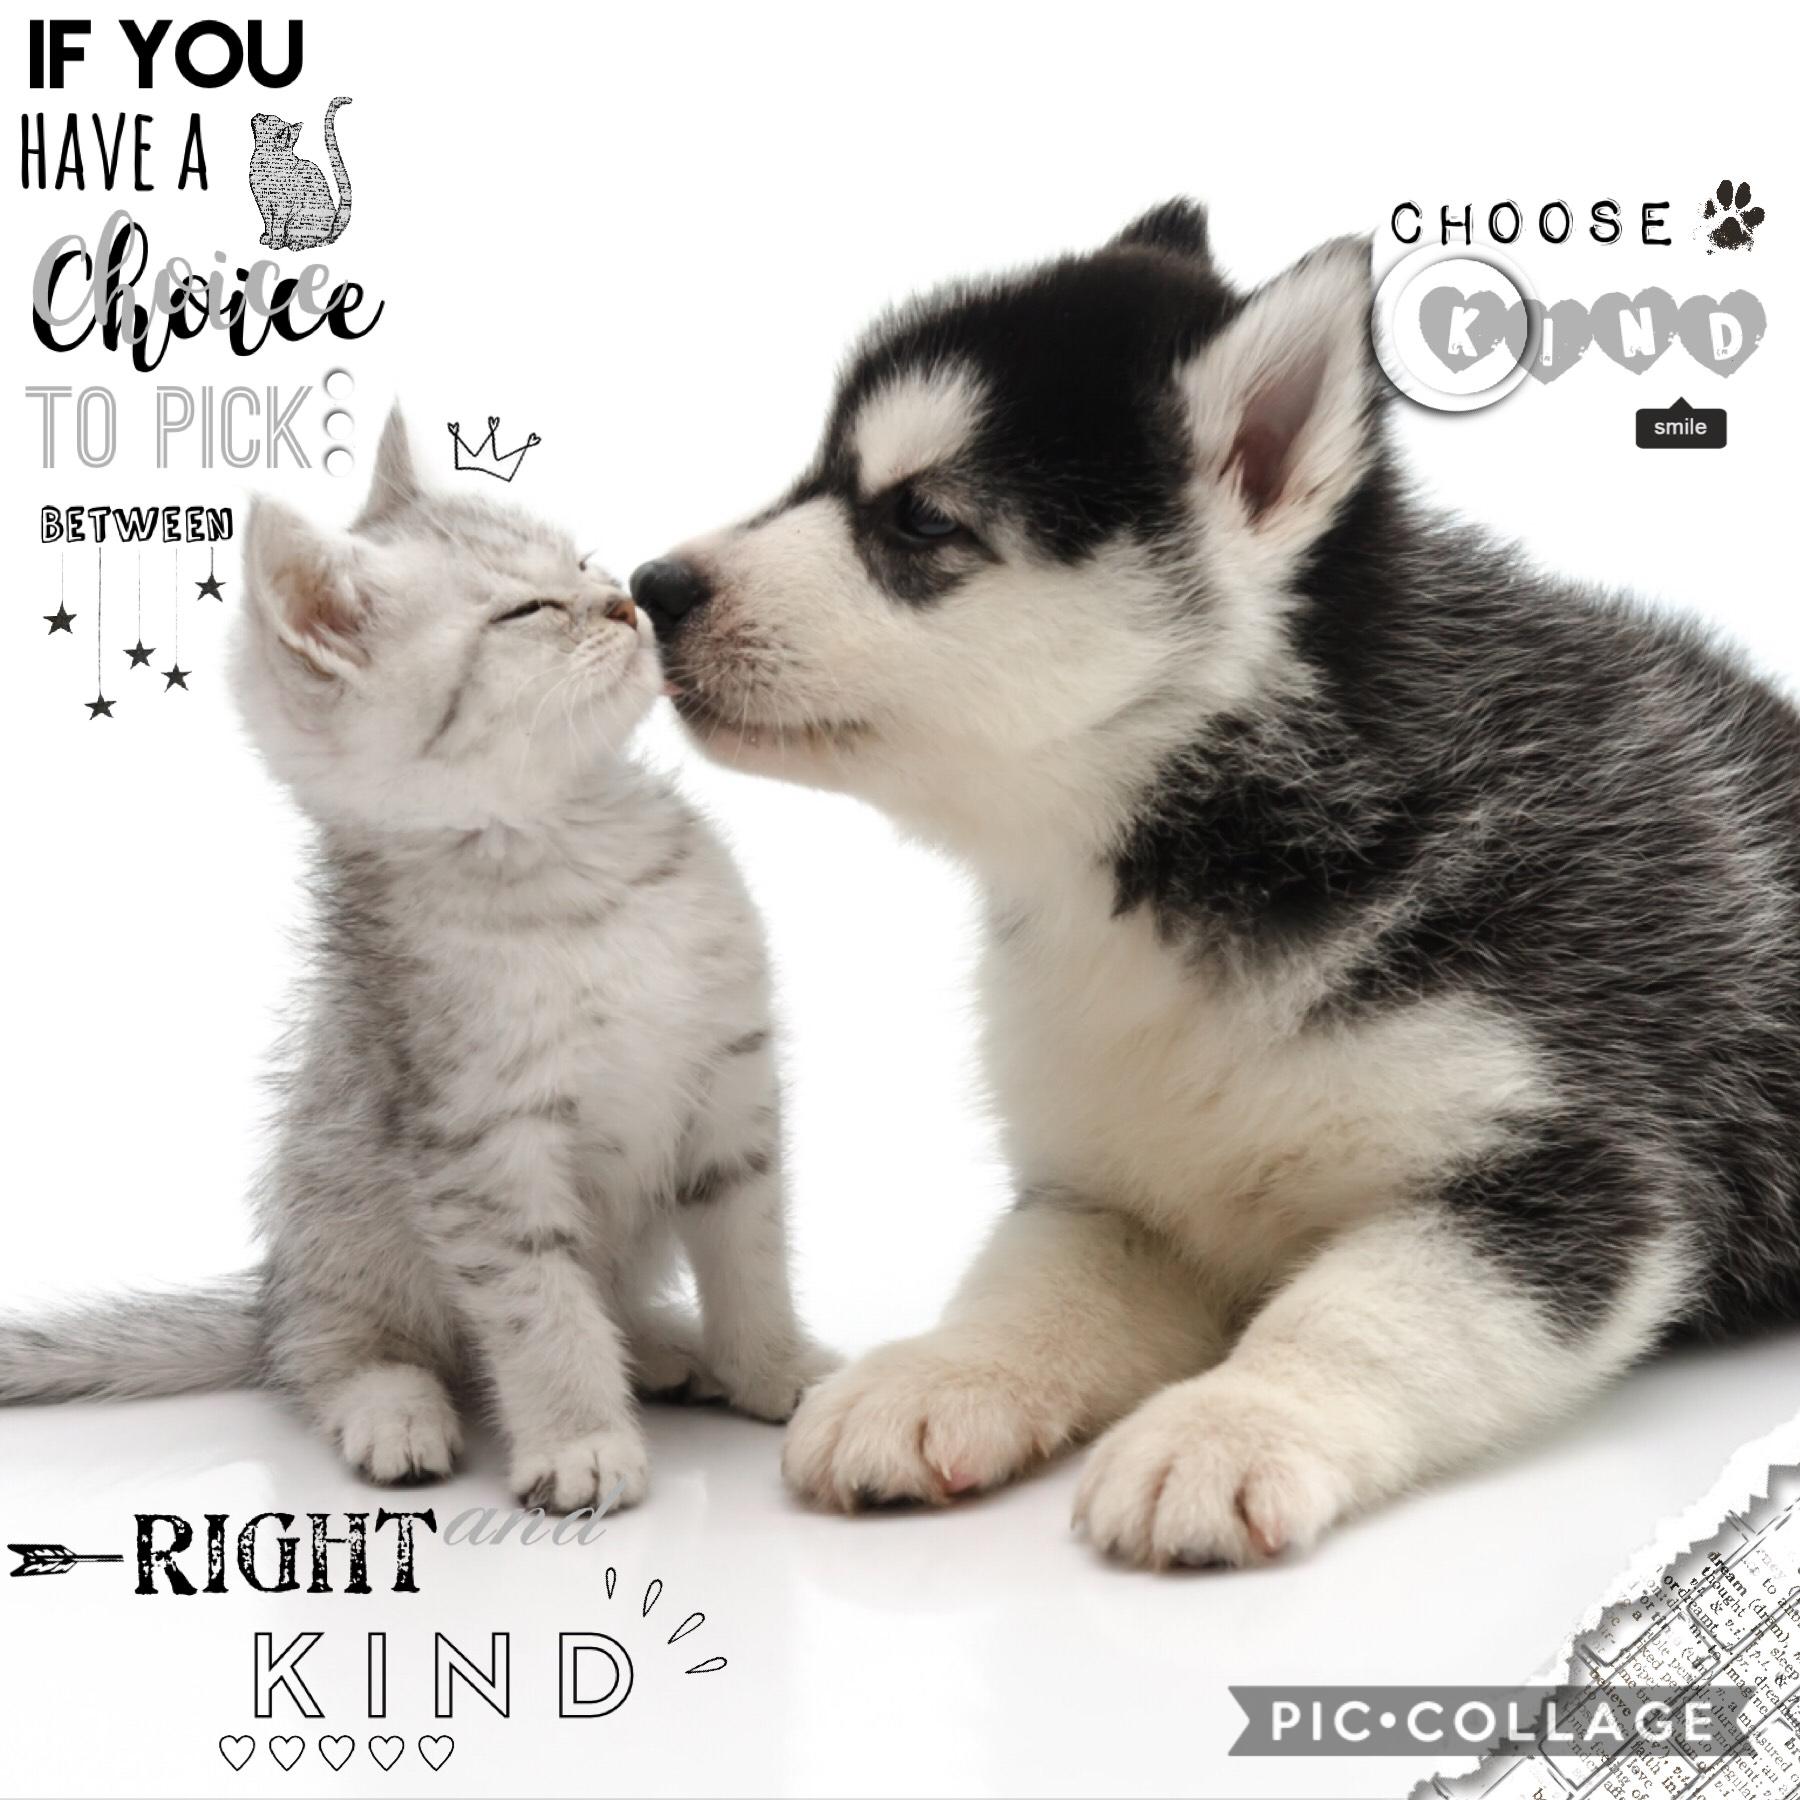 Choose kind 💓